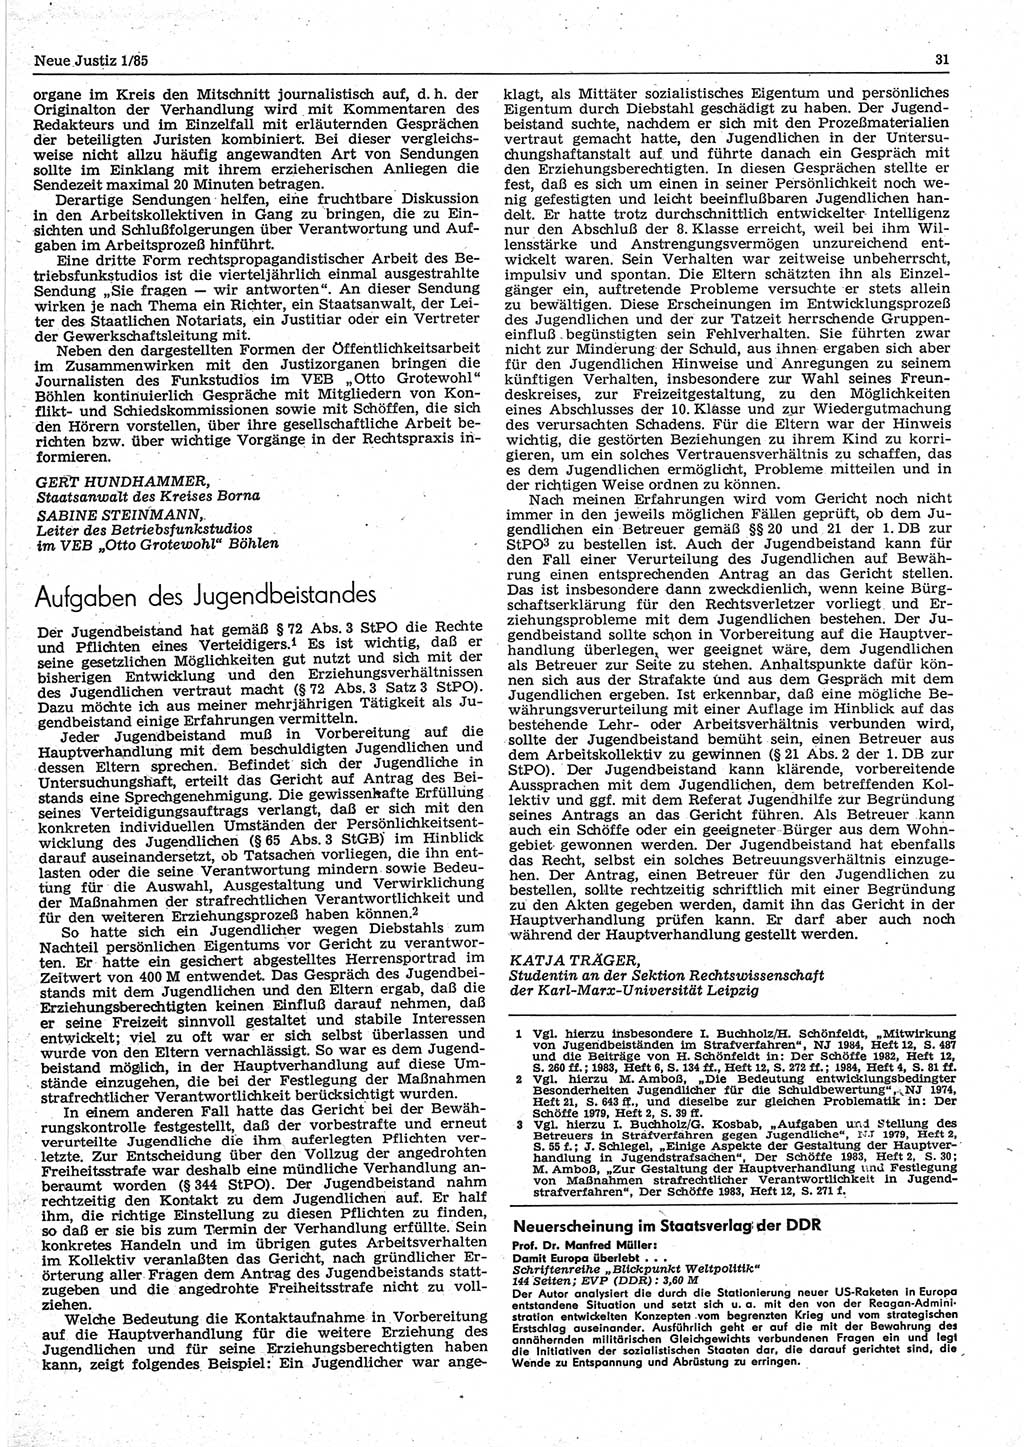 Neue Justiz (NJ), Zeitschrift für sozialistisches Recht und Gesetzlichkeit [Deutsche Demokratische Republik (DDR)], 39. Jahrgang 1985, Seite 31 (NJ DDR 1985, S. 31)